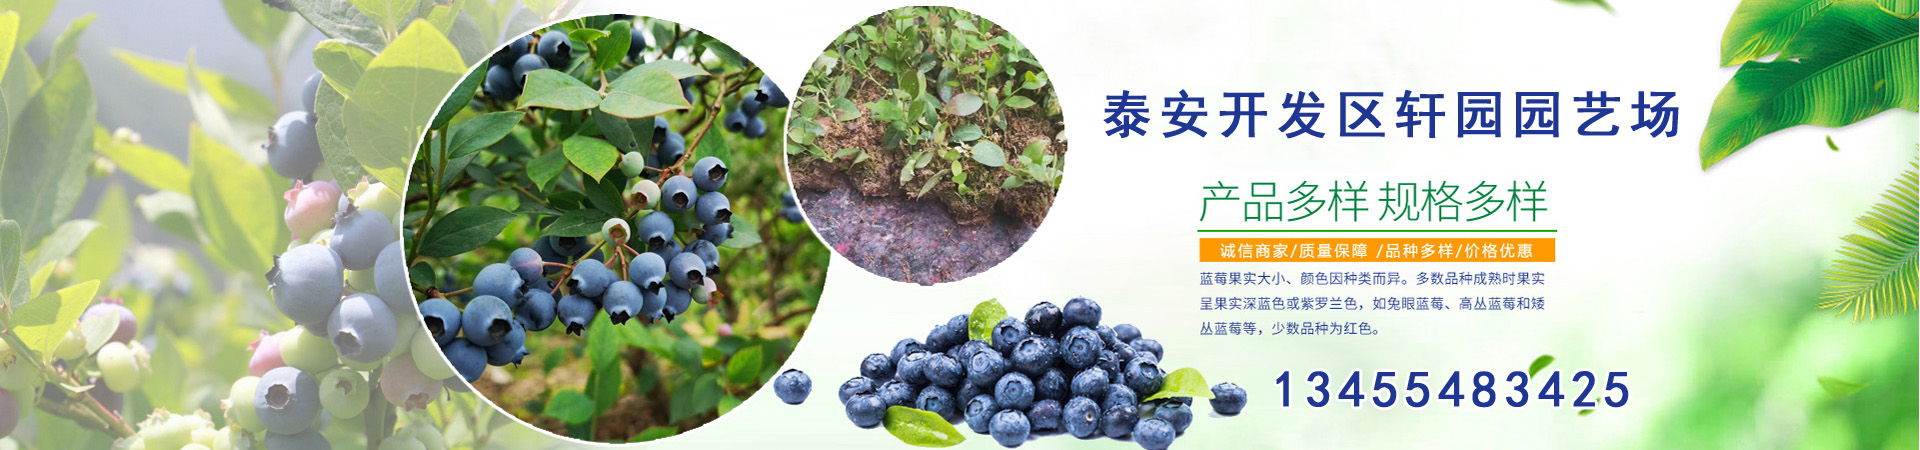 蓝莓苗、上海本地蓝莓苗、上海、上海蓝莓苗